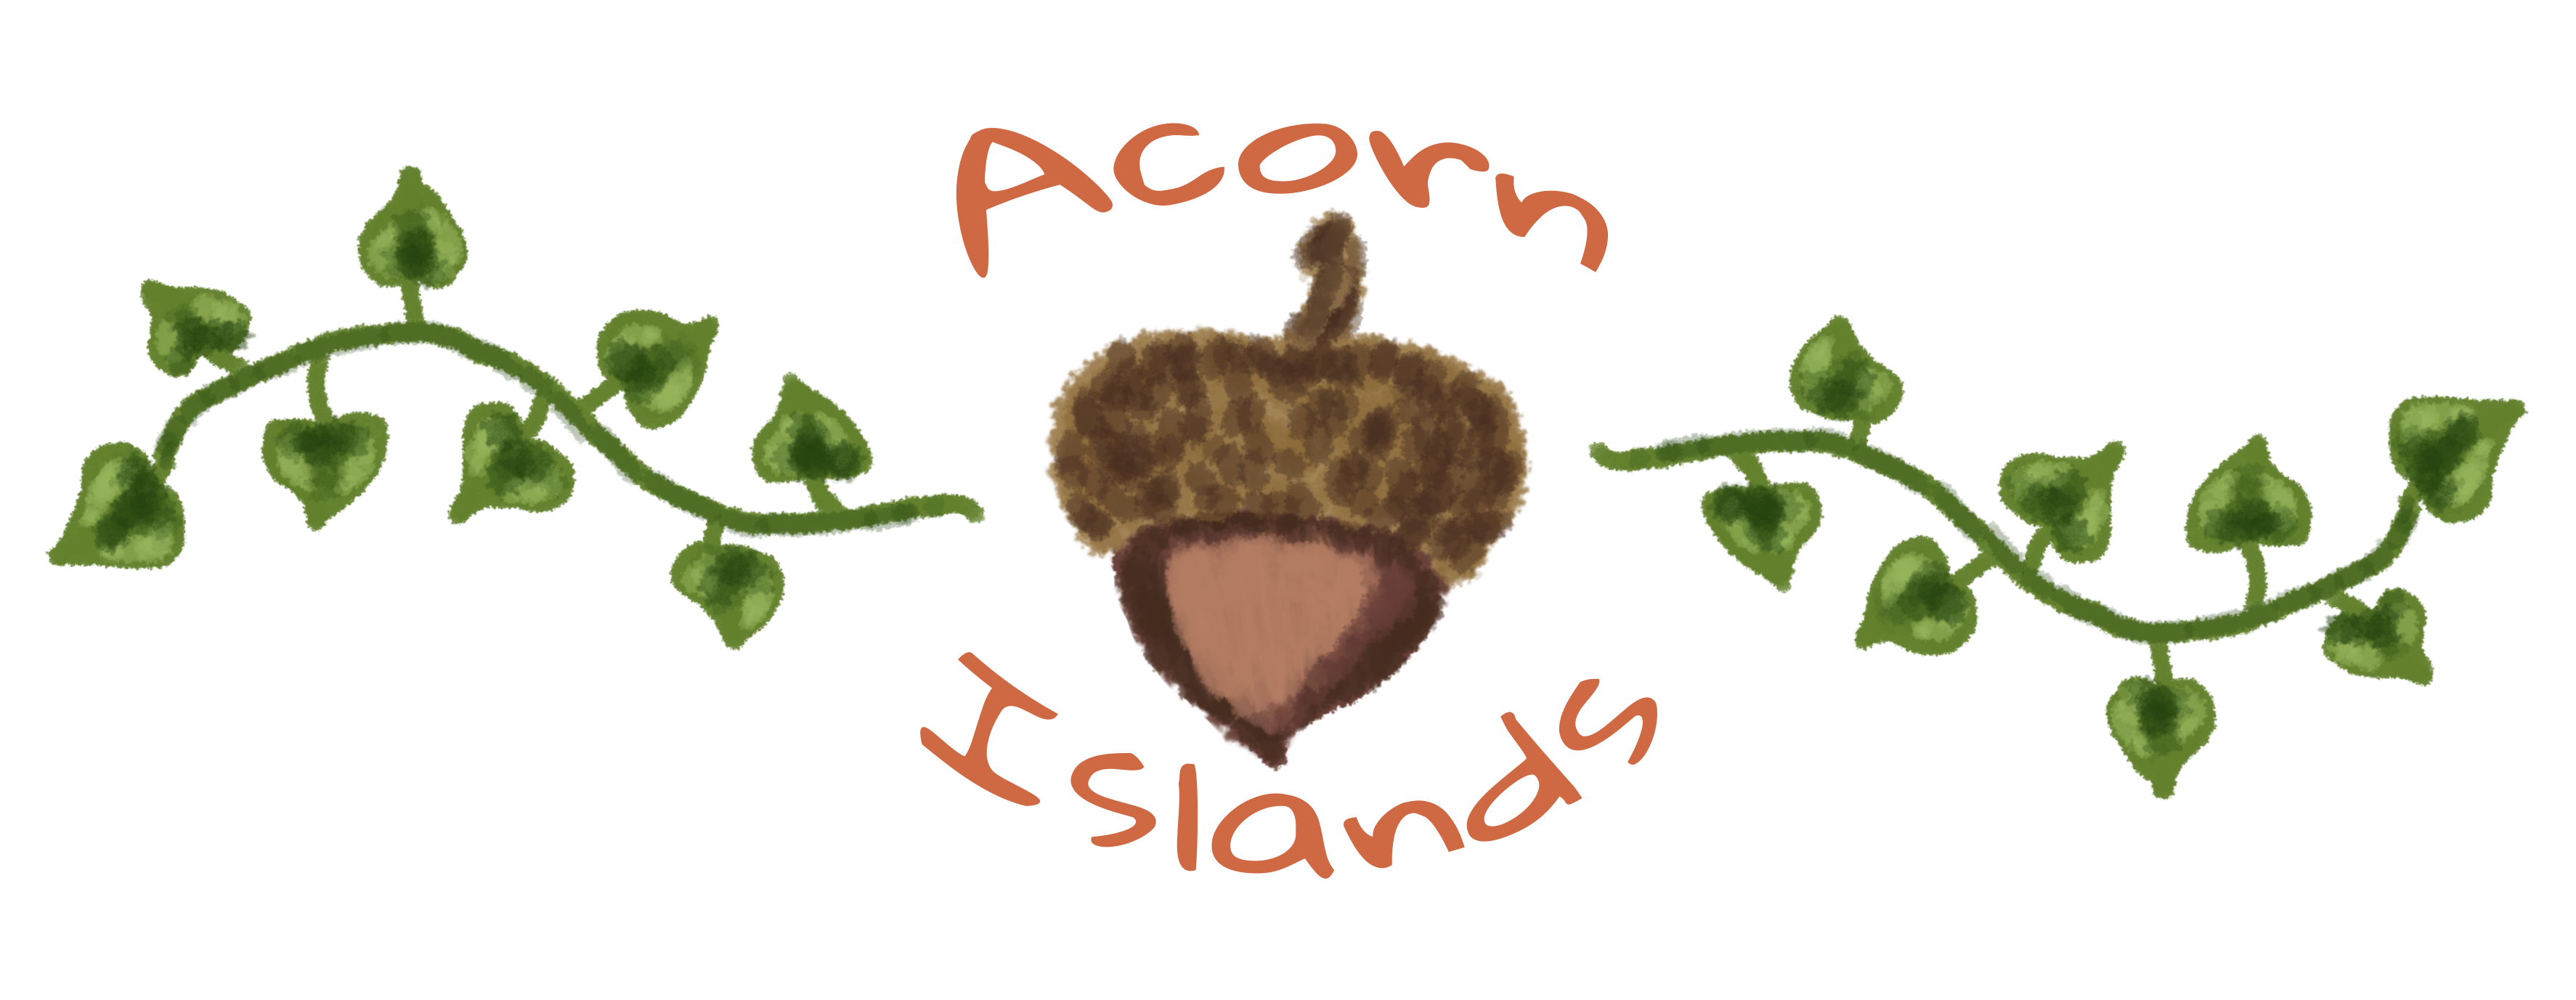 Acorn Islands